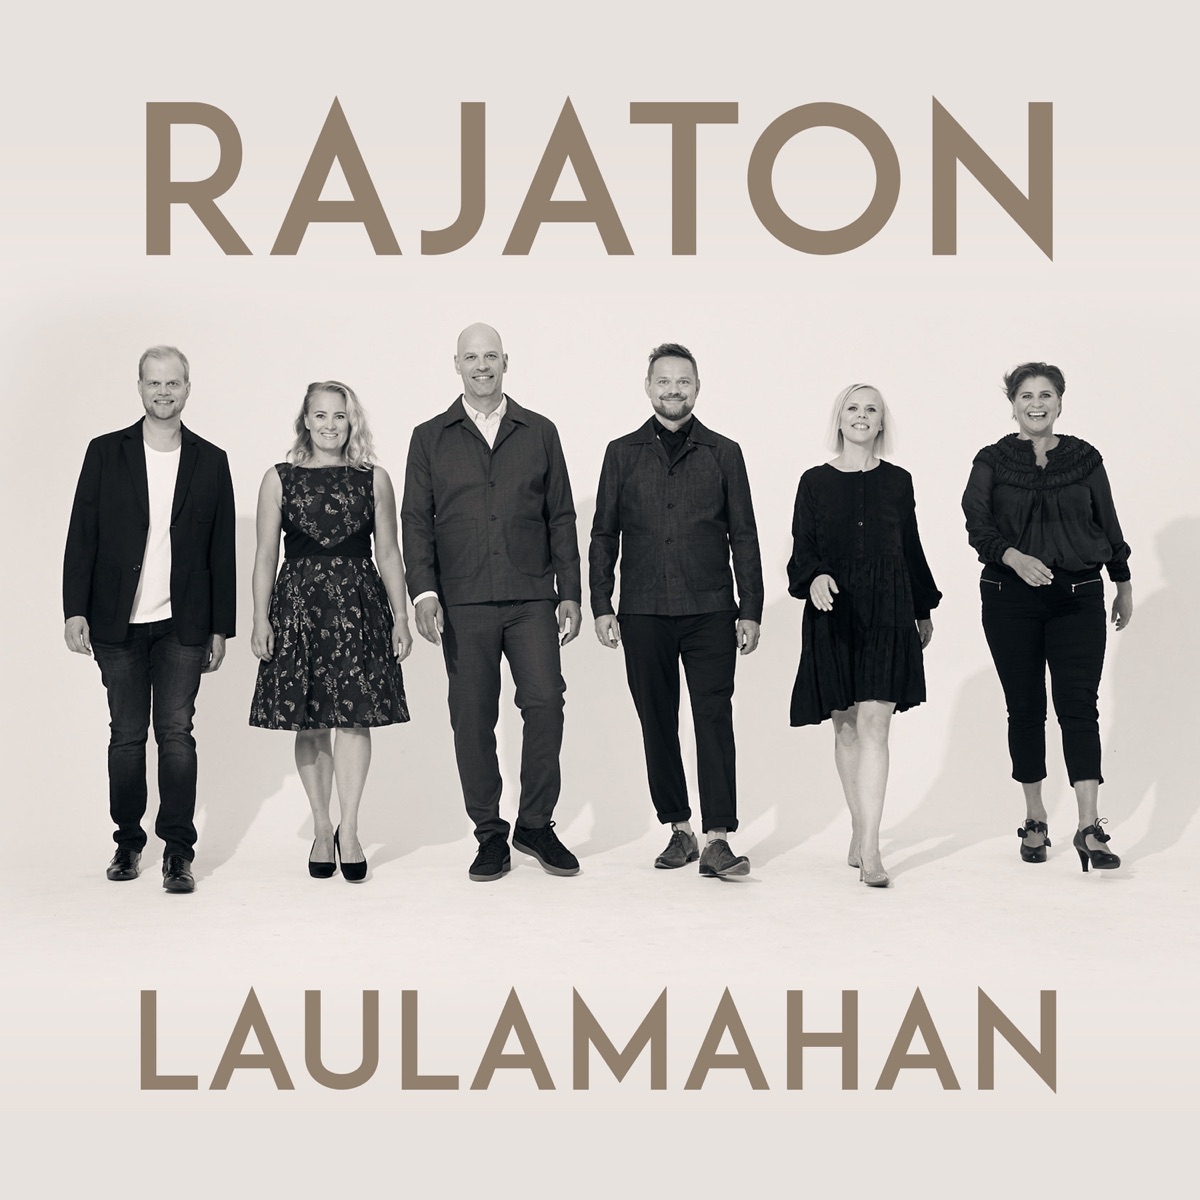 Myrskyn jälkeen (feat. Kari Tapio) - Single by Rajaton on Apple Music